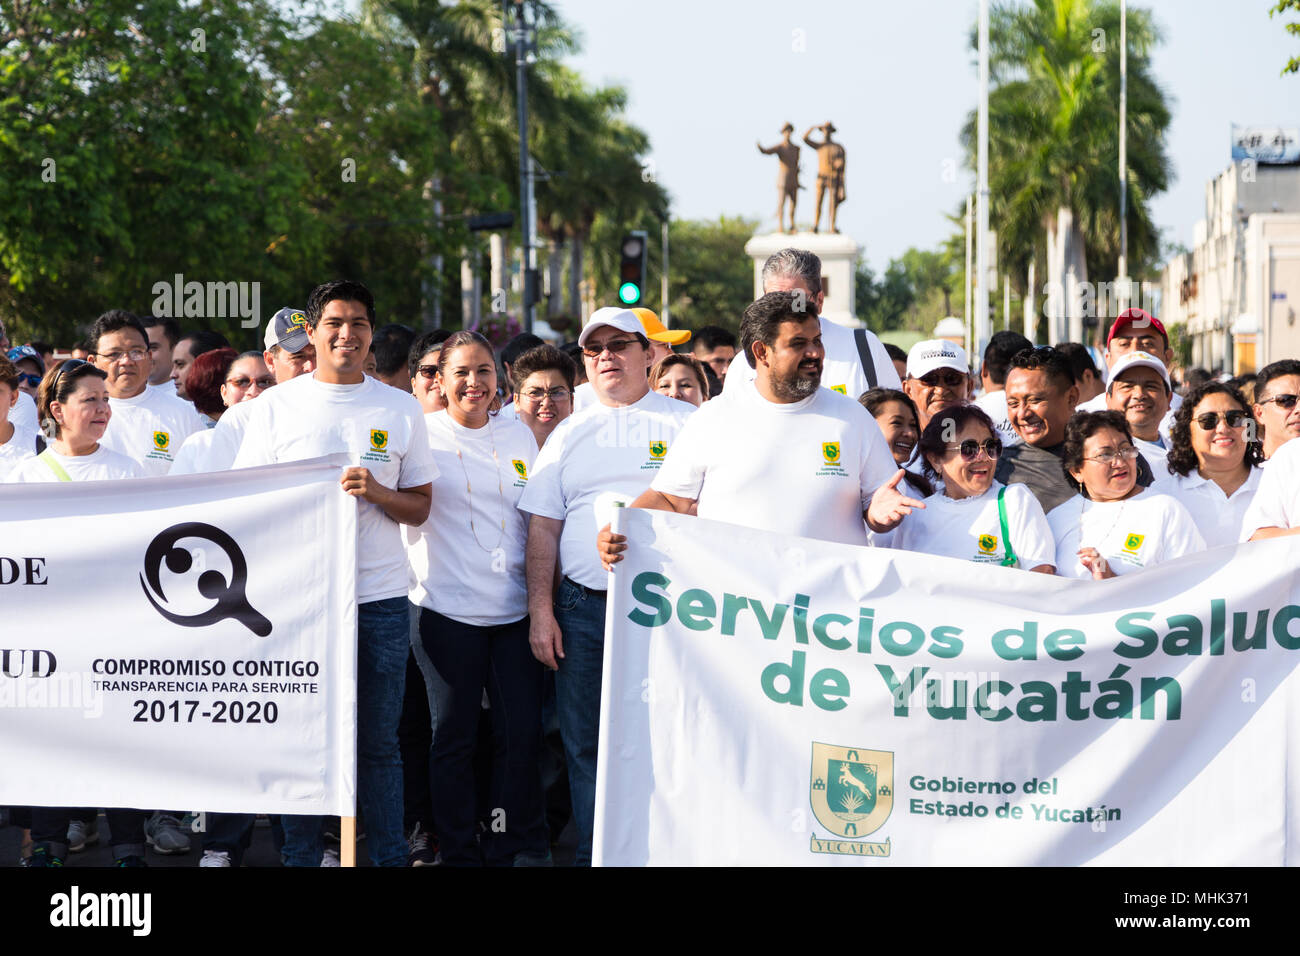 Eine große Gruppe von Menschen feiern der Internationalen Arbeiter Tag am 1. Mai in Yucatán Mérida México. Stockfoto